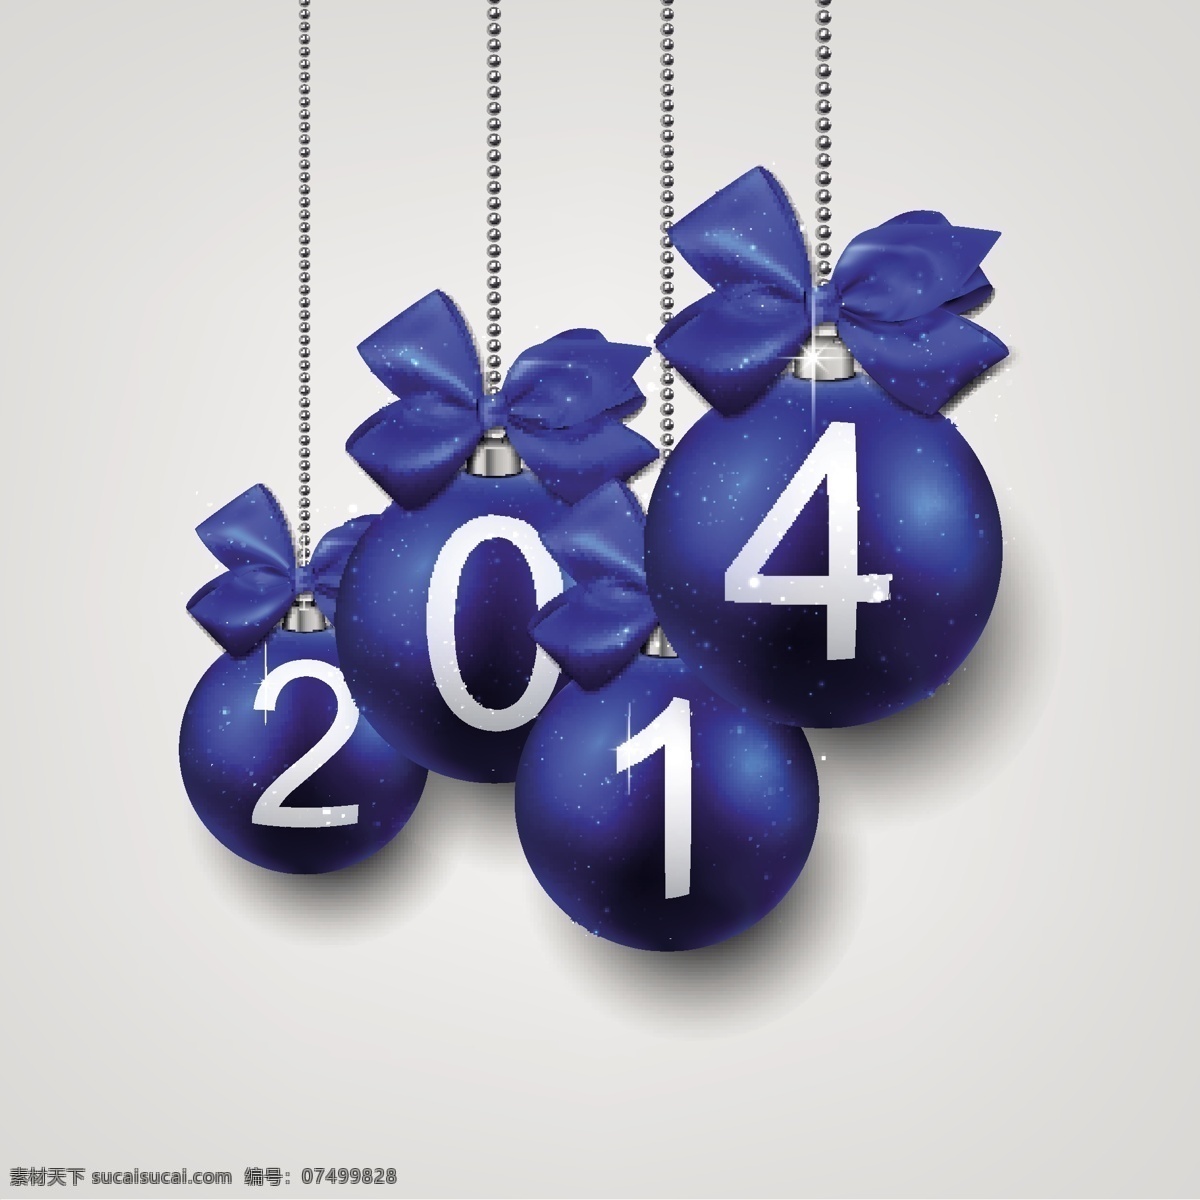 2014 彩色 圣诞球 矢量 球 圣诞 矢量节日 节日素材 其他节日